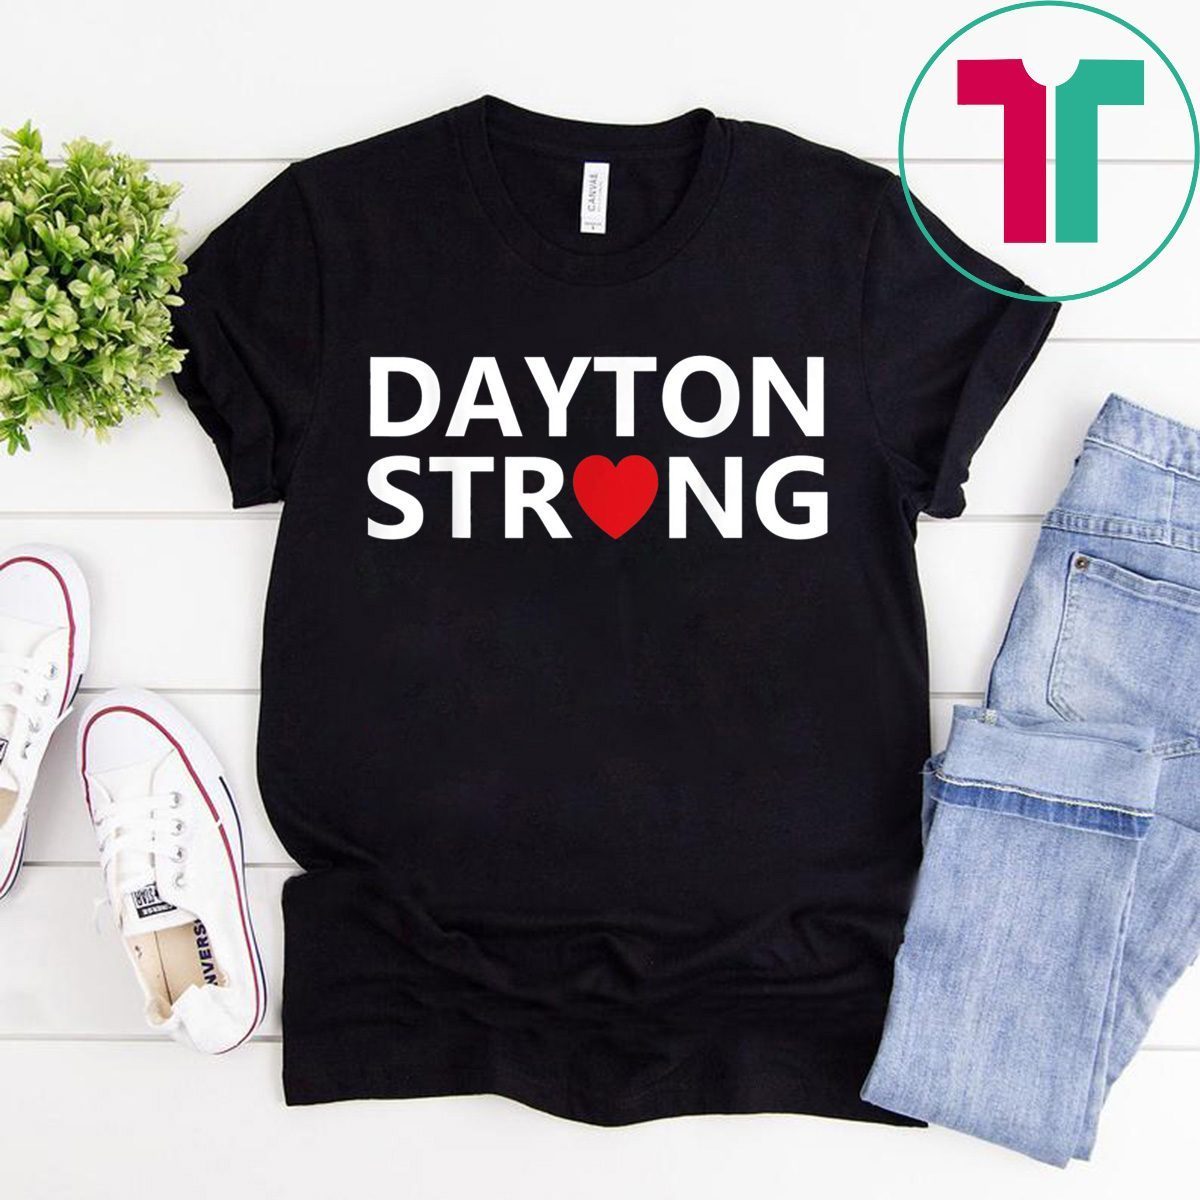 #DaytonStrong Shirt Dayton Strong T-Shirt - OrderQuilt.com1200 x 1200